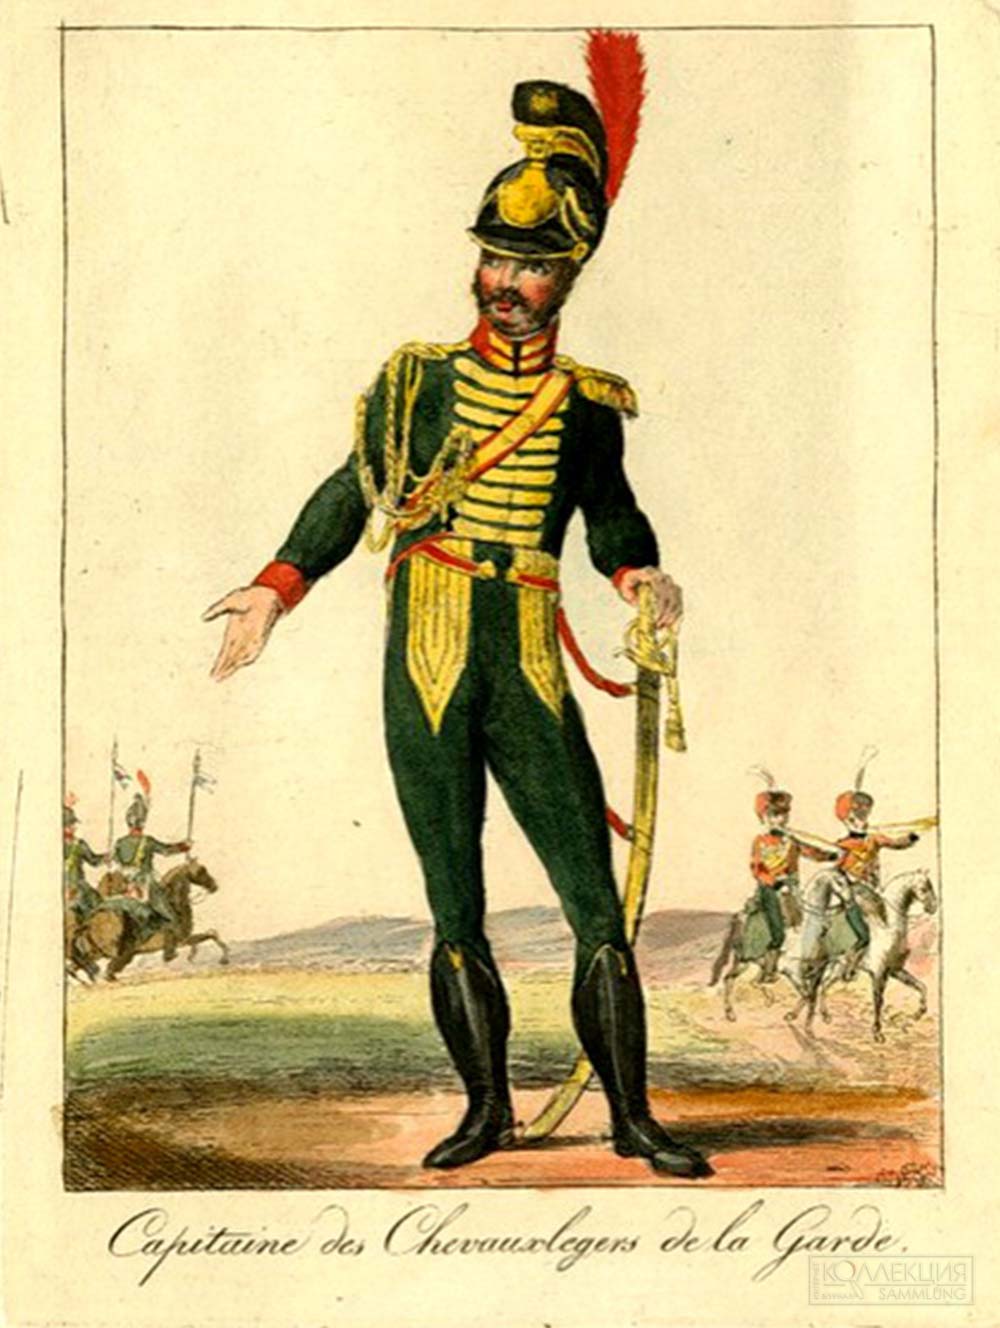 Рисунок капитана гвардейских шеволежеров Королевства Вестфалия